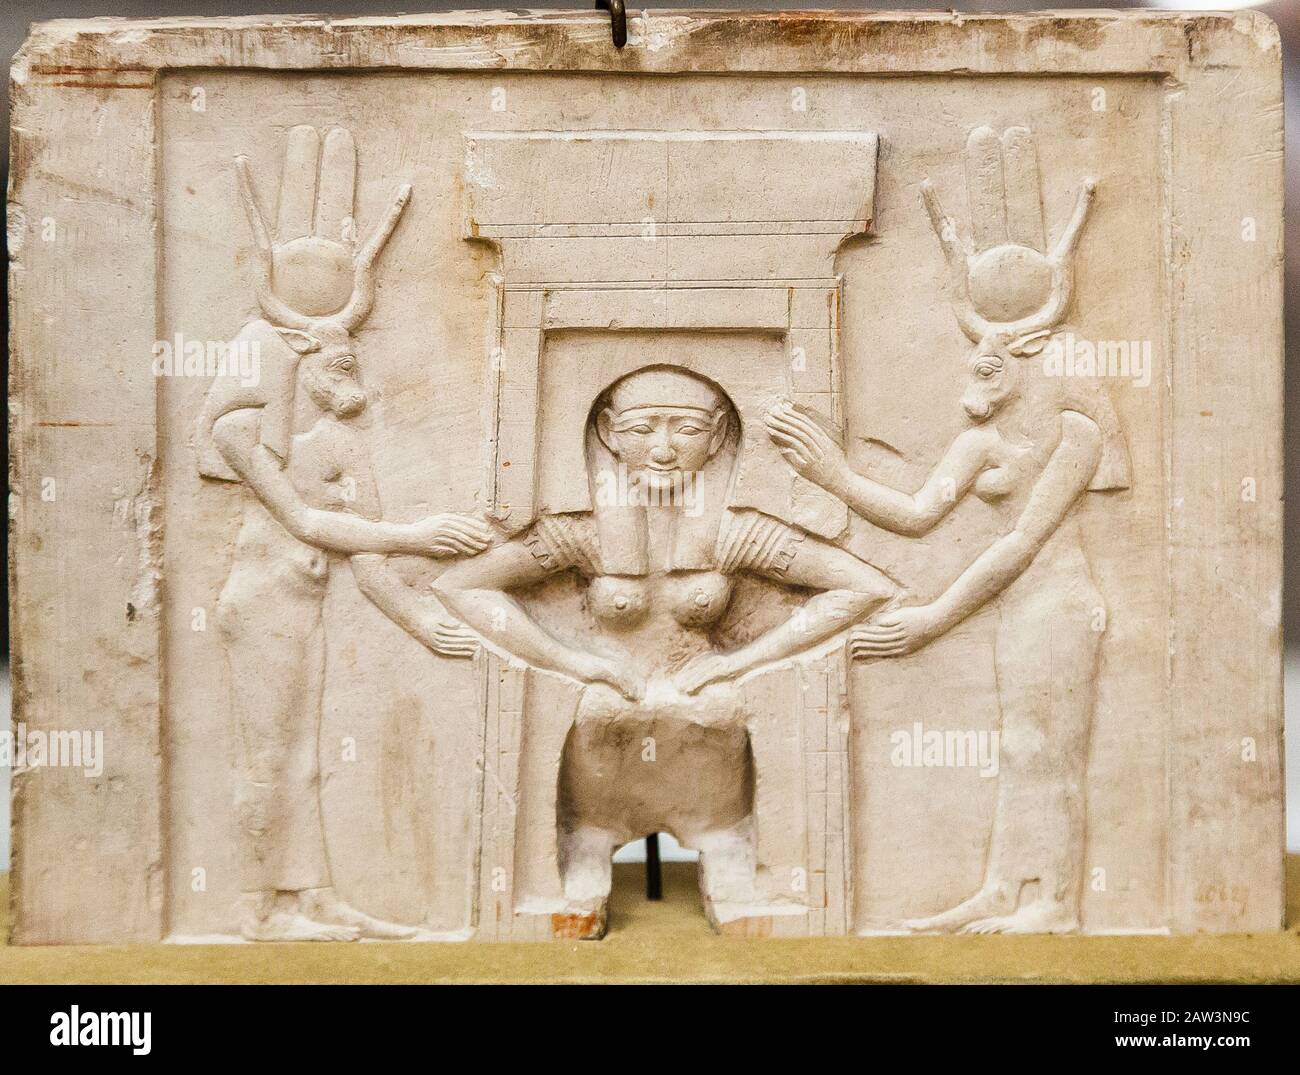 Egypte, le Caire, le Musée égyptien, plaque ex-voto en bas soulagement montrant une femme sur la chaise d'accouchement. Elle est entourée de deux femmes avec têtes de vache. Banque D'Images